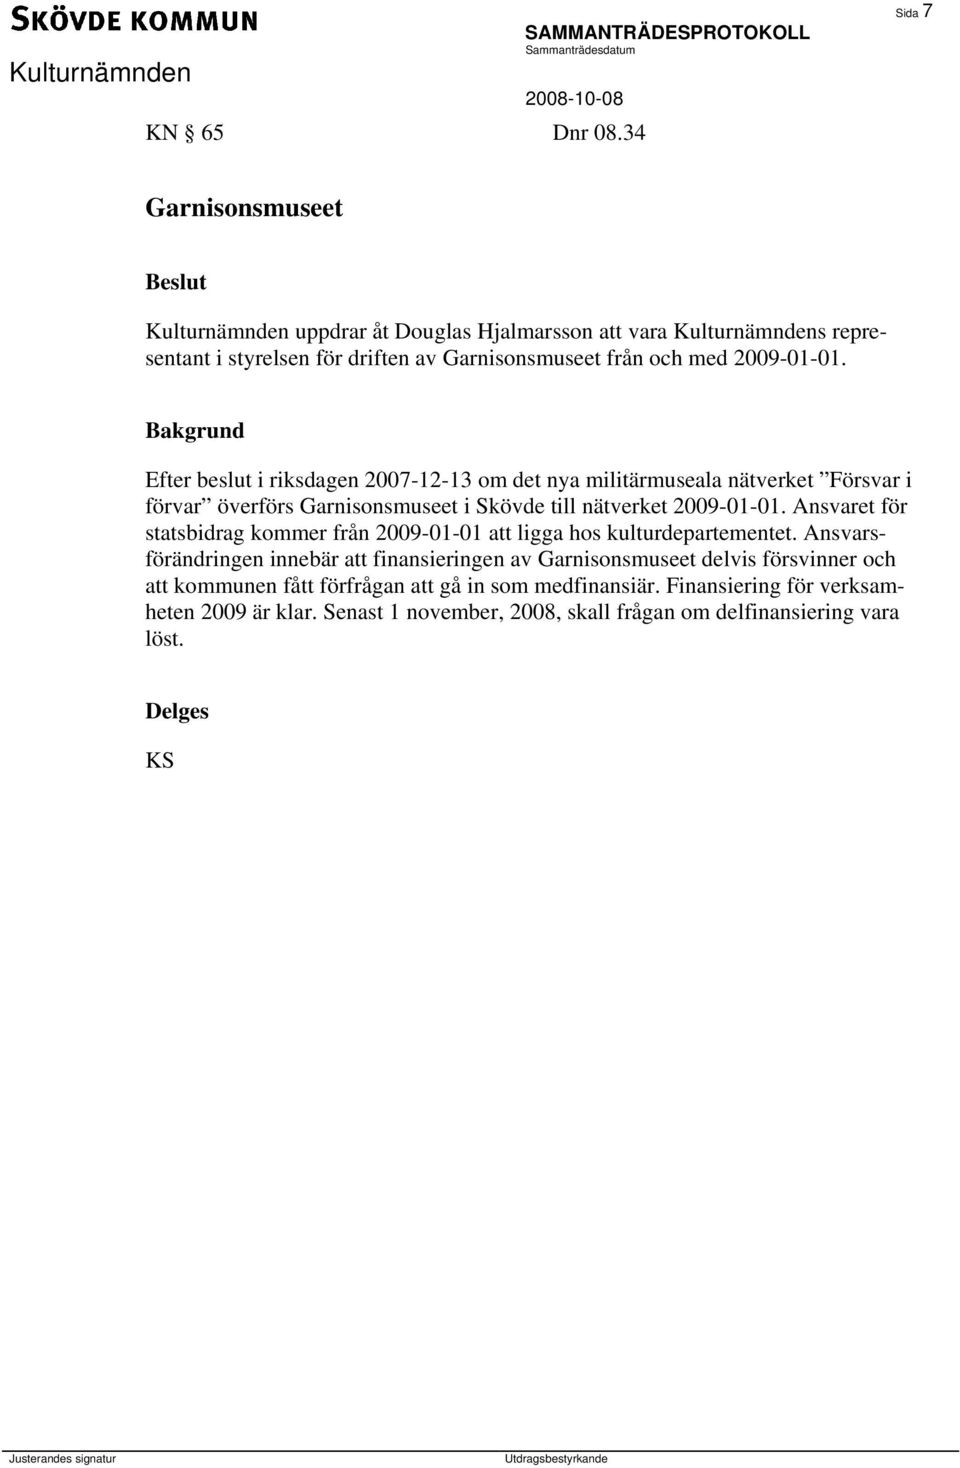 2009-01-01. Efter beslut i riksdagen 2007-12-13 om det nya militärmuseala nätverket Försvar i förvar överförs Garnisonsmuseet i Skövde till nätverket 2009-01-01.